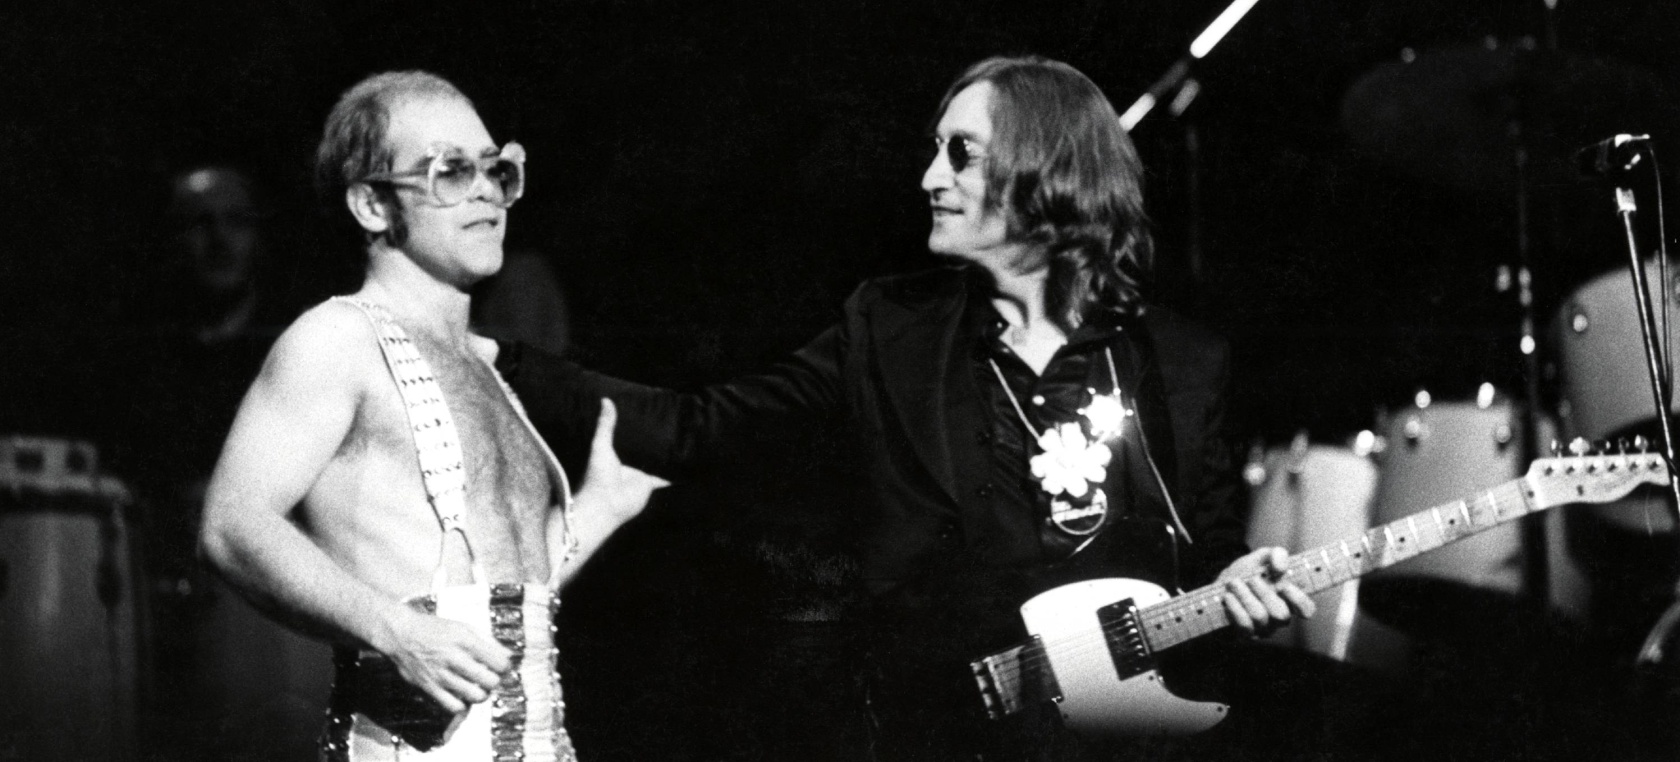 La última actuación John Lennon tras perder una apuesta durante su “romance relámpago” con Elton John